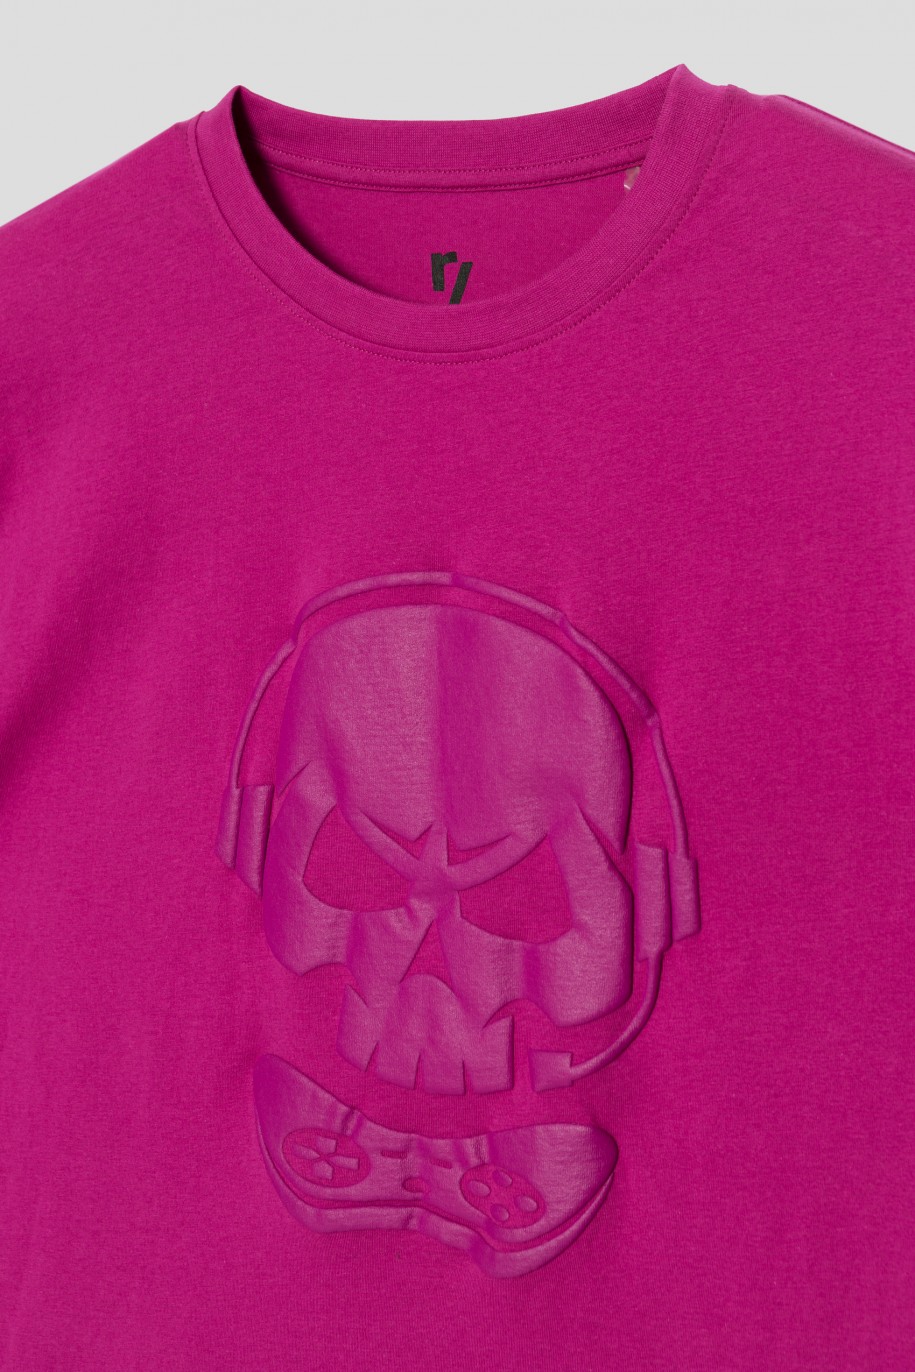 Fioletowy t-shirt z nadrukiem SKULL dla chłopaka - 33529